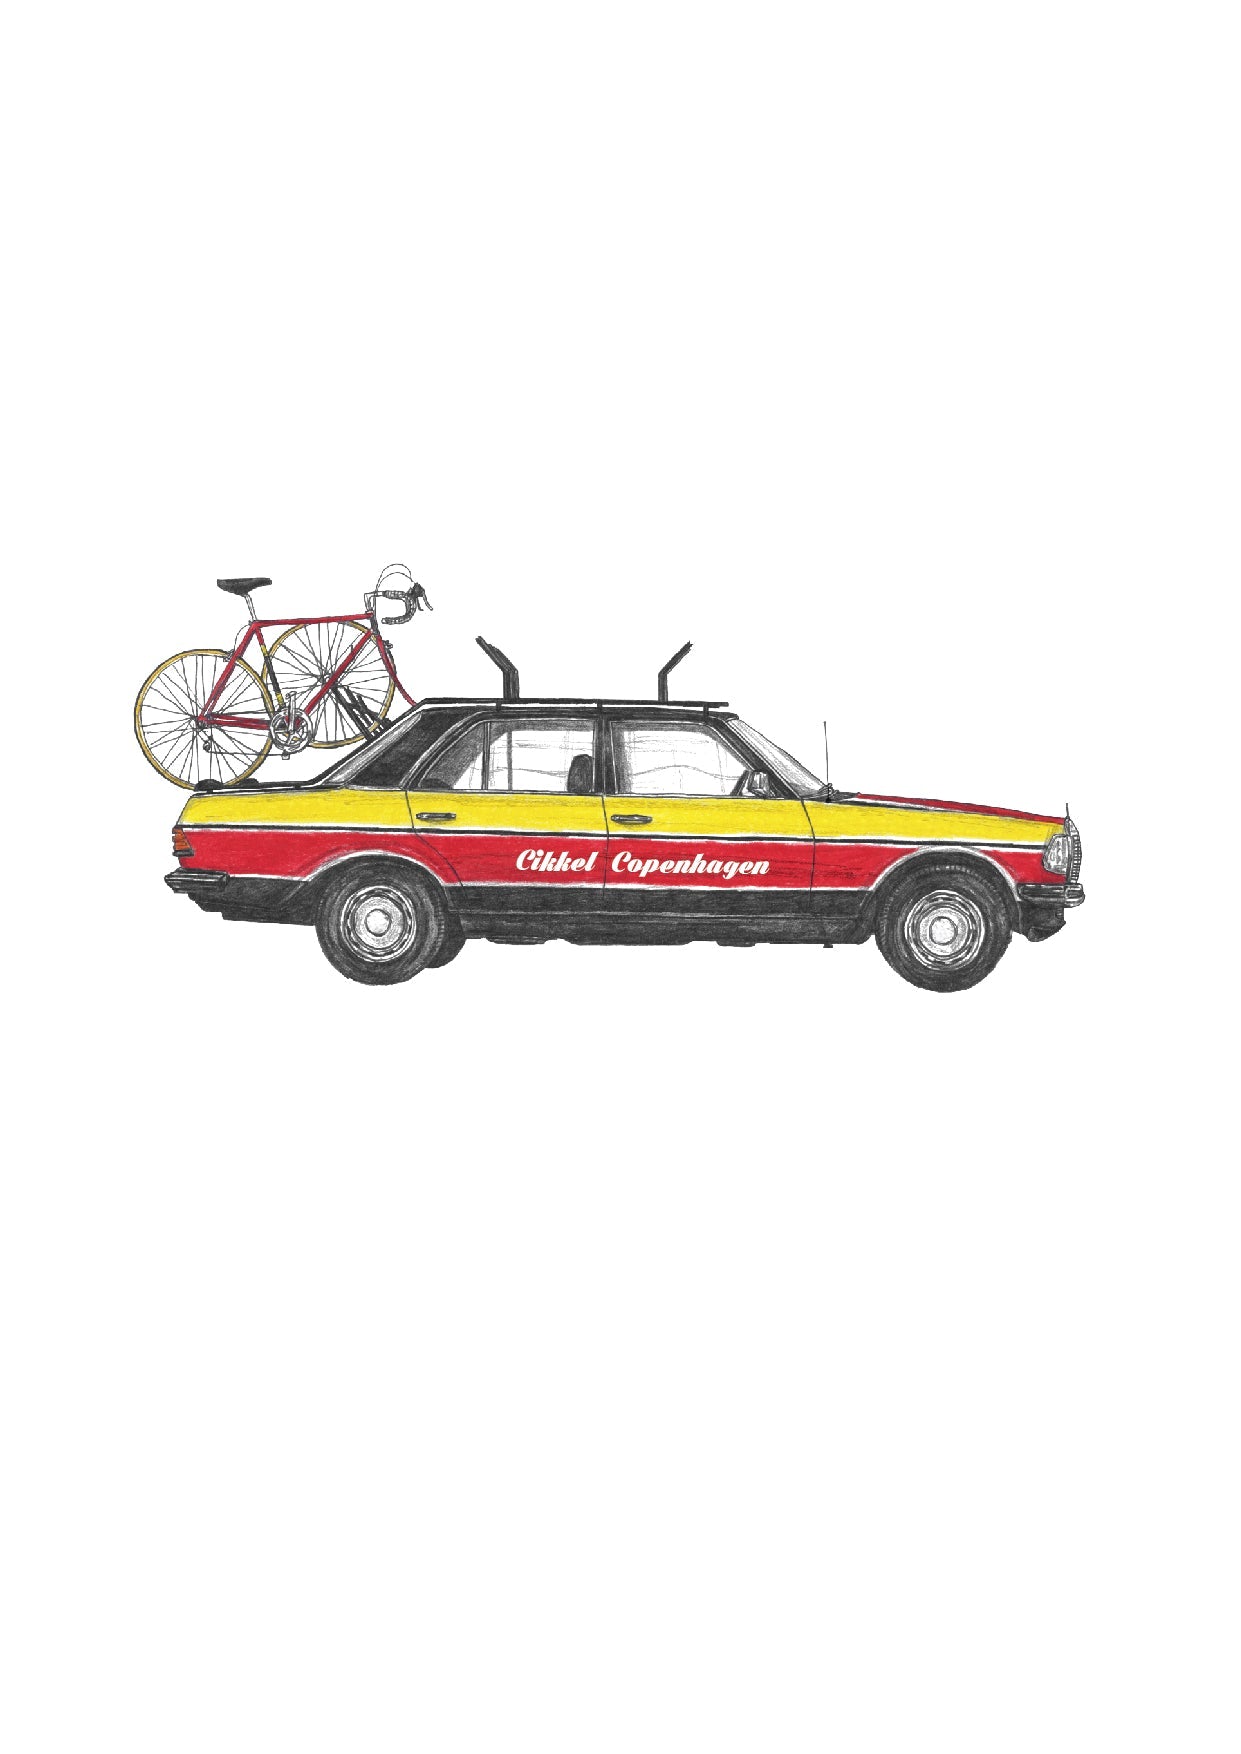 Cikkel Copenhagen - Red & Yellow 1980 Cycling Team Car